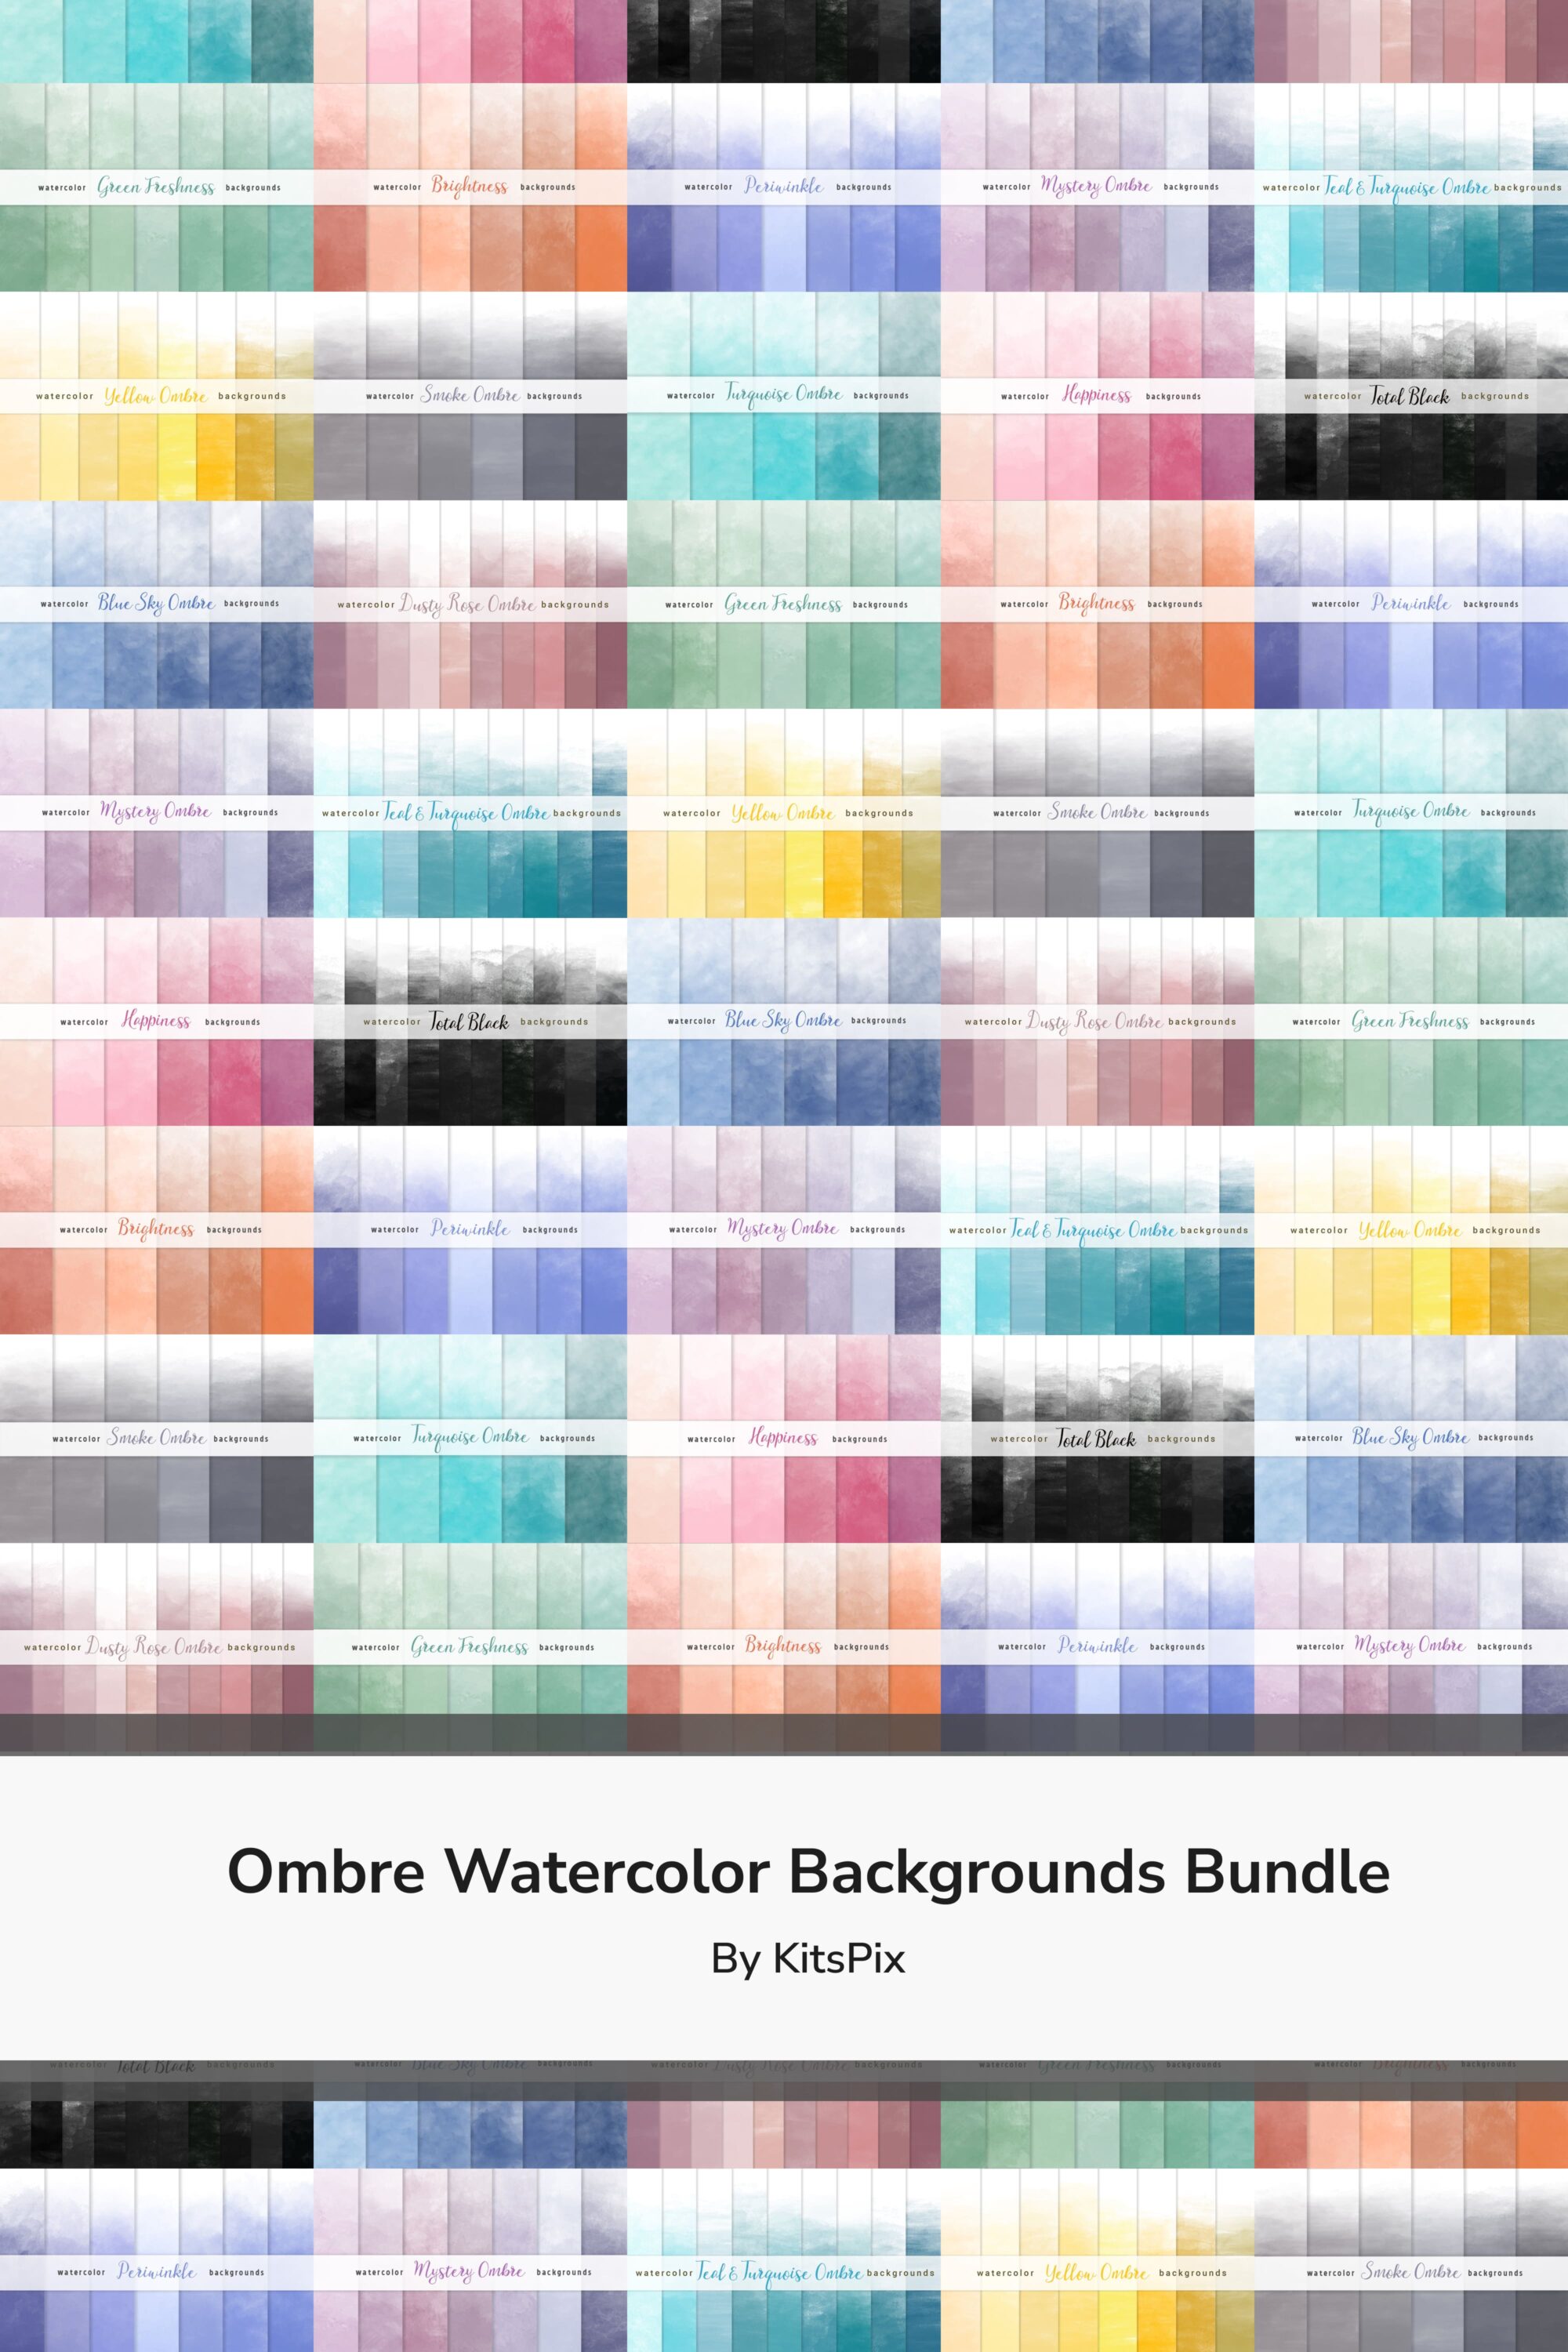 Ombre Watercolor Backgrounds Bundle pinterest image.